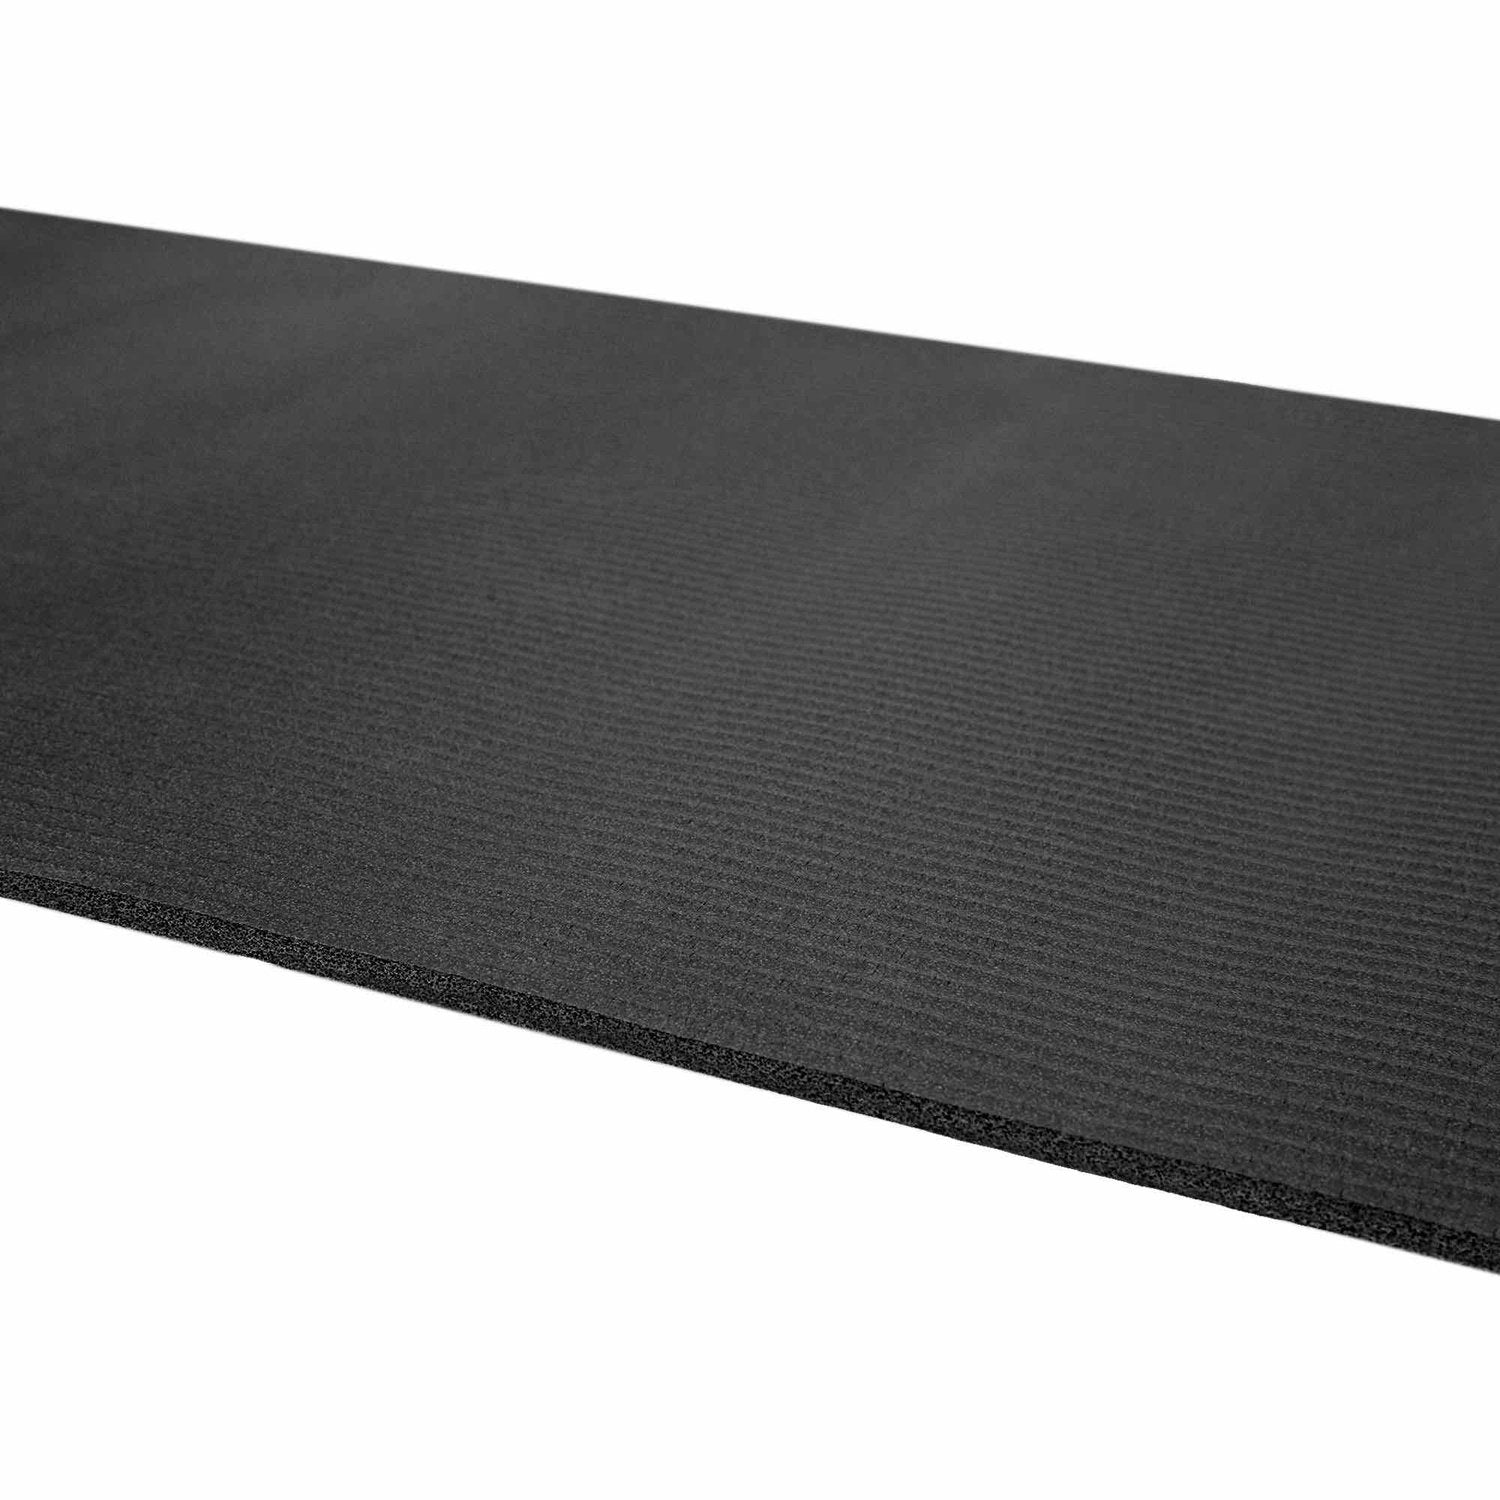 HighPowered Yogamatte (NBR, 183x61x0.8 cm) Schwarz kaufen bei HighPowered.ch